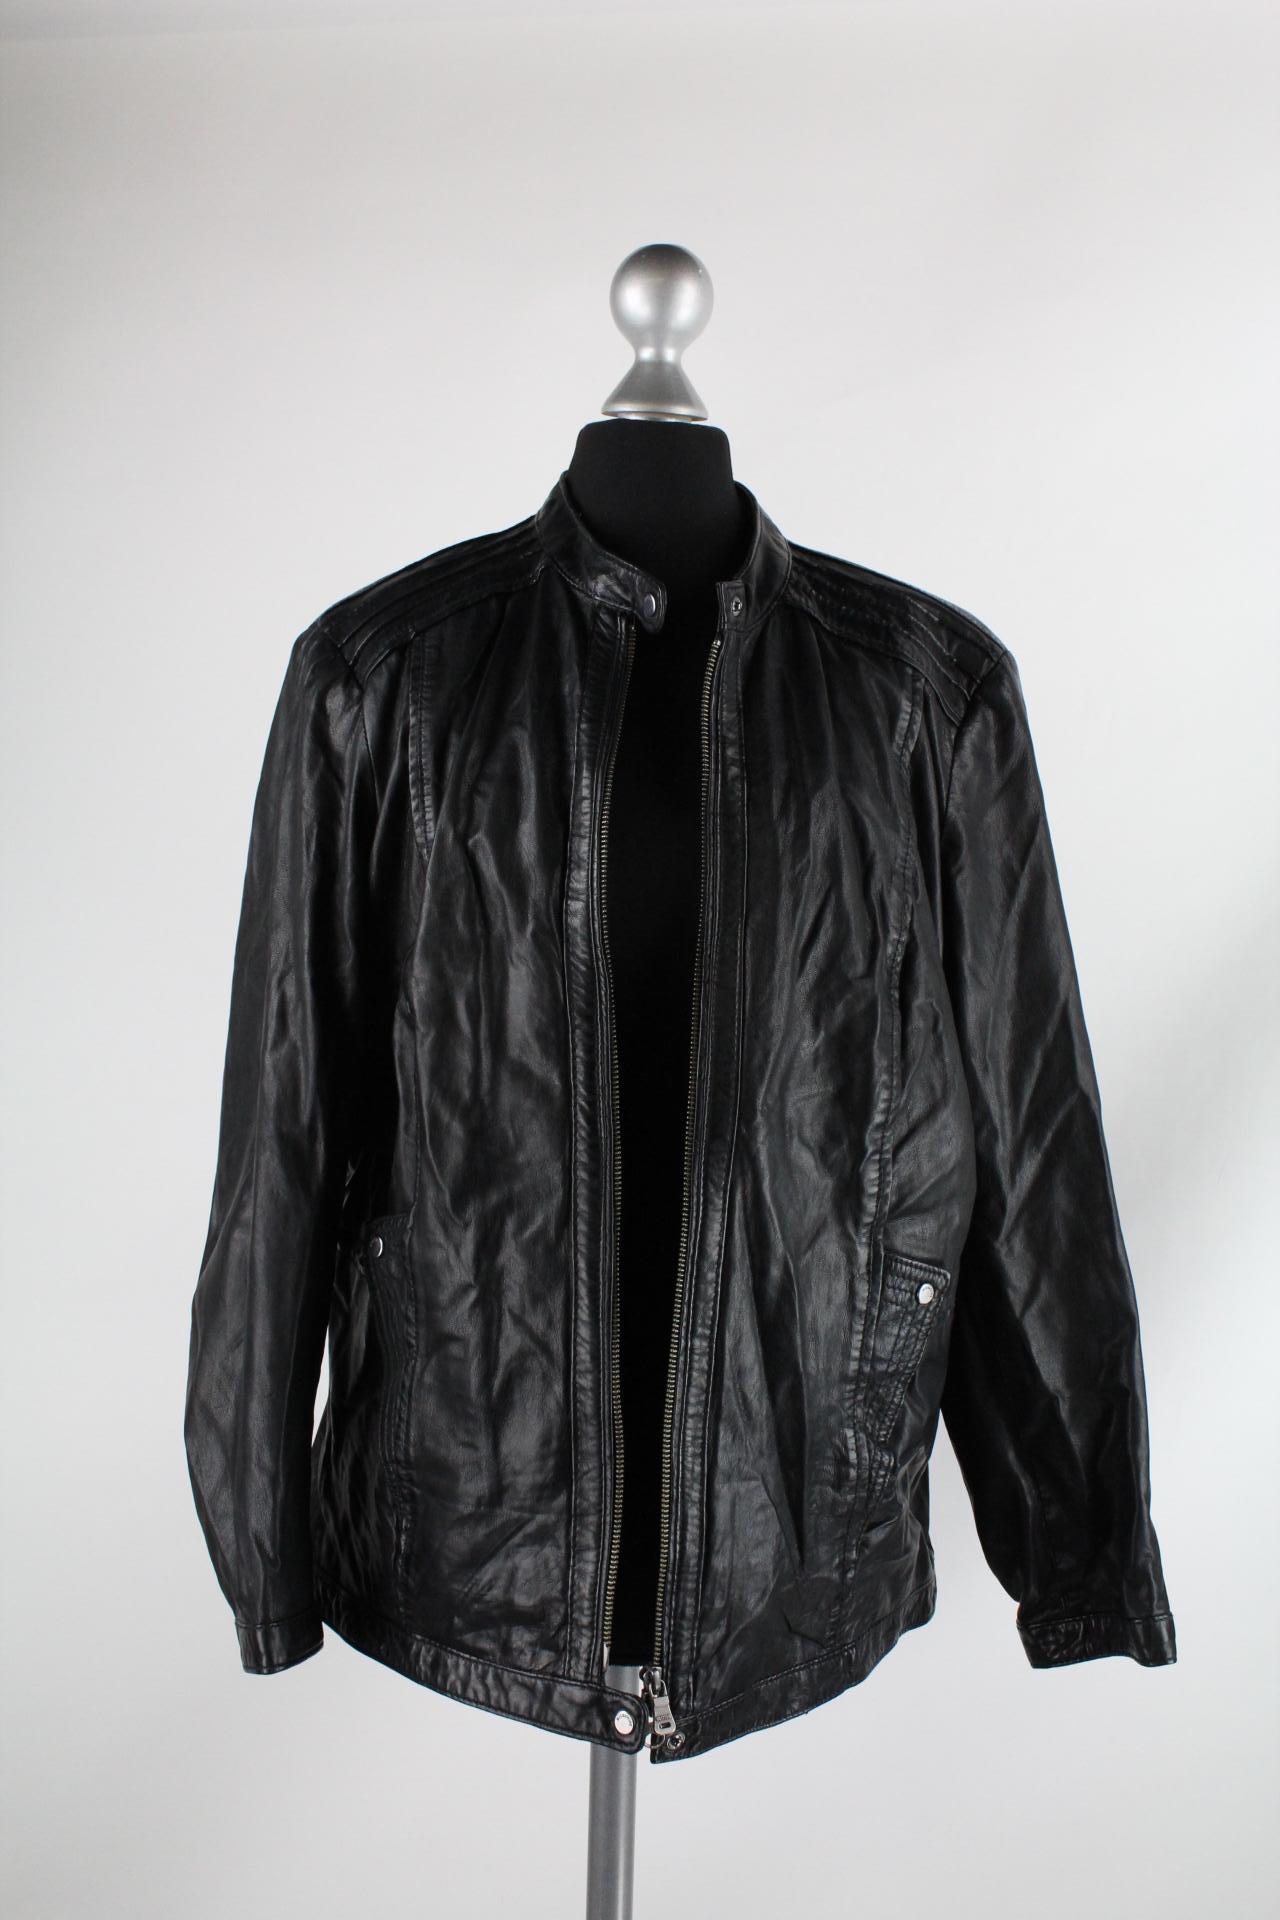 Milestone Damen-Lederjacke schwarz Größe 46